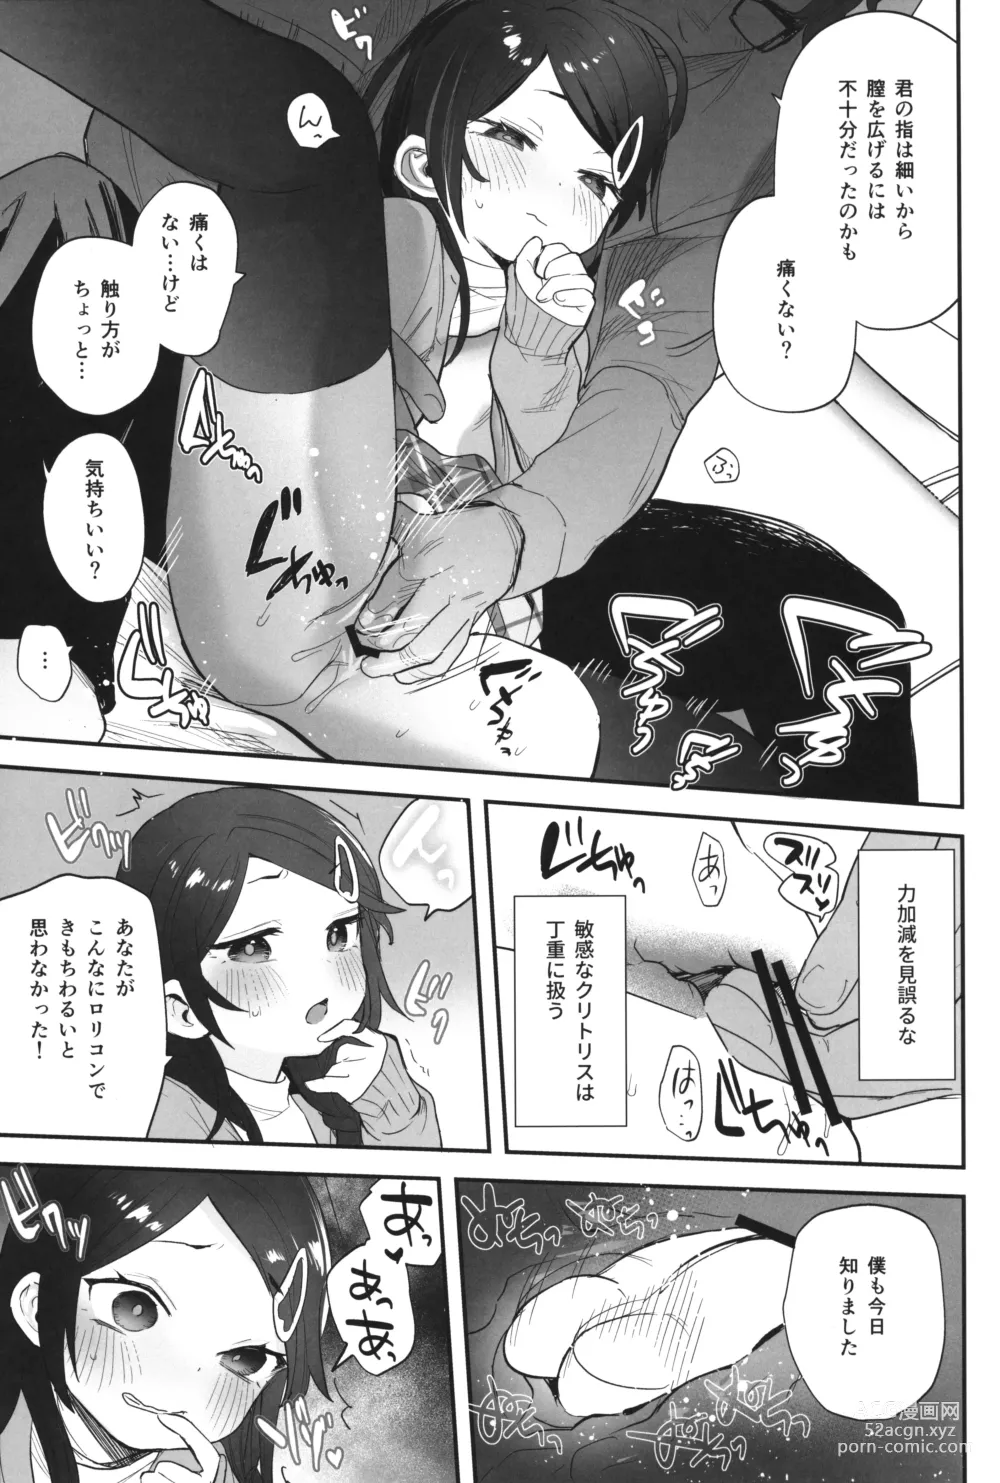 Page 12 of doujinshi Futoukou de Daitensai no Kimi no Ana ga Umaru made